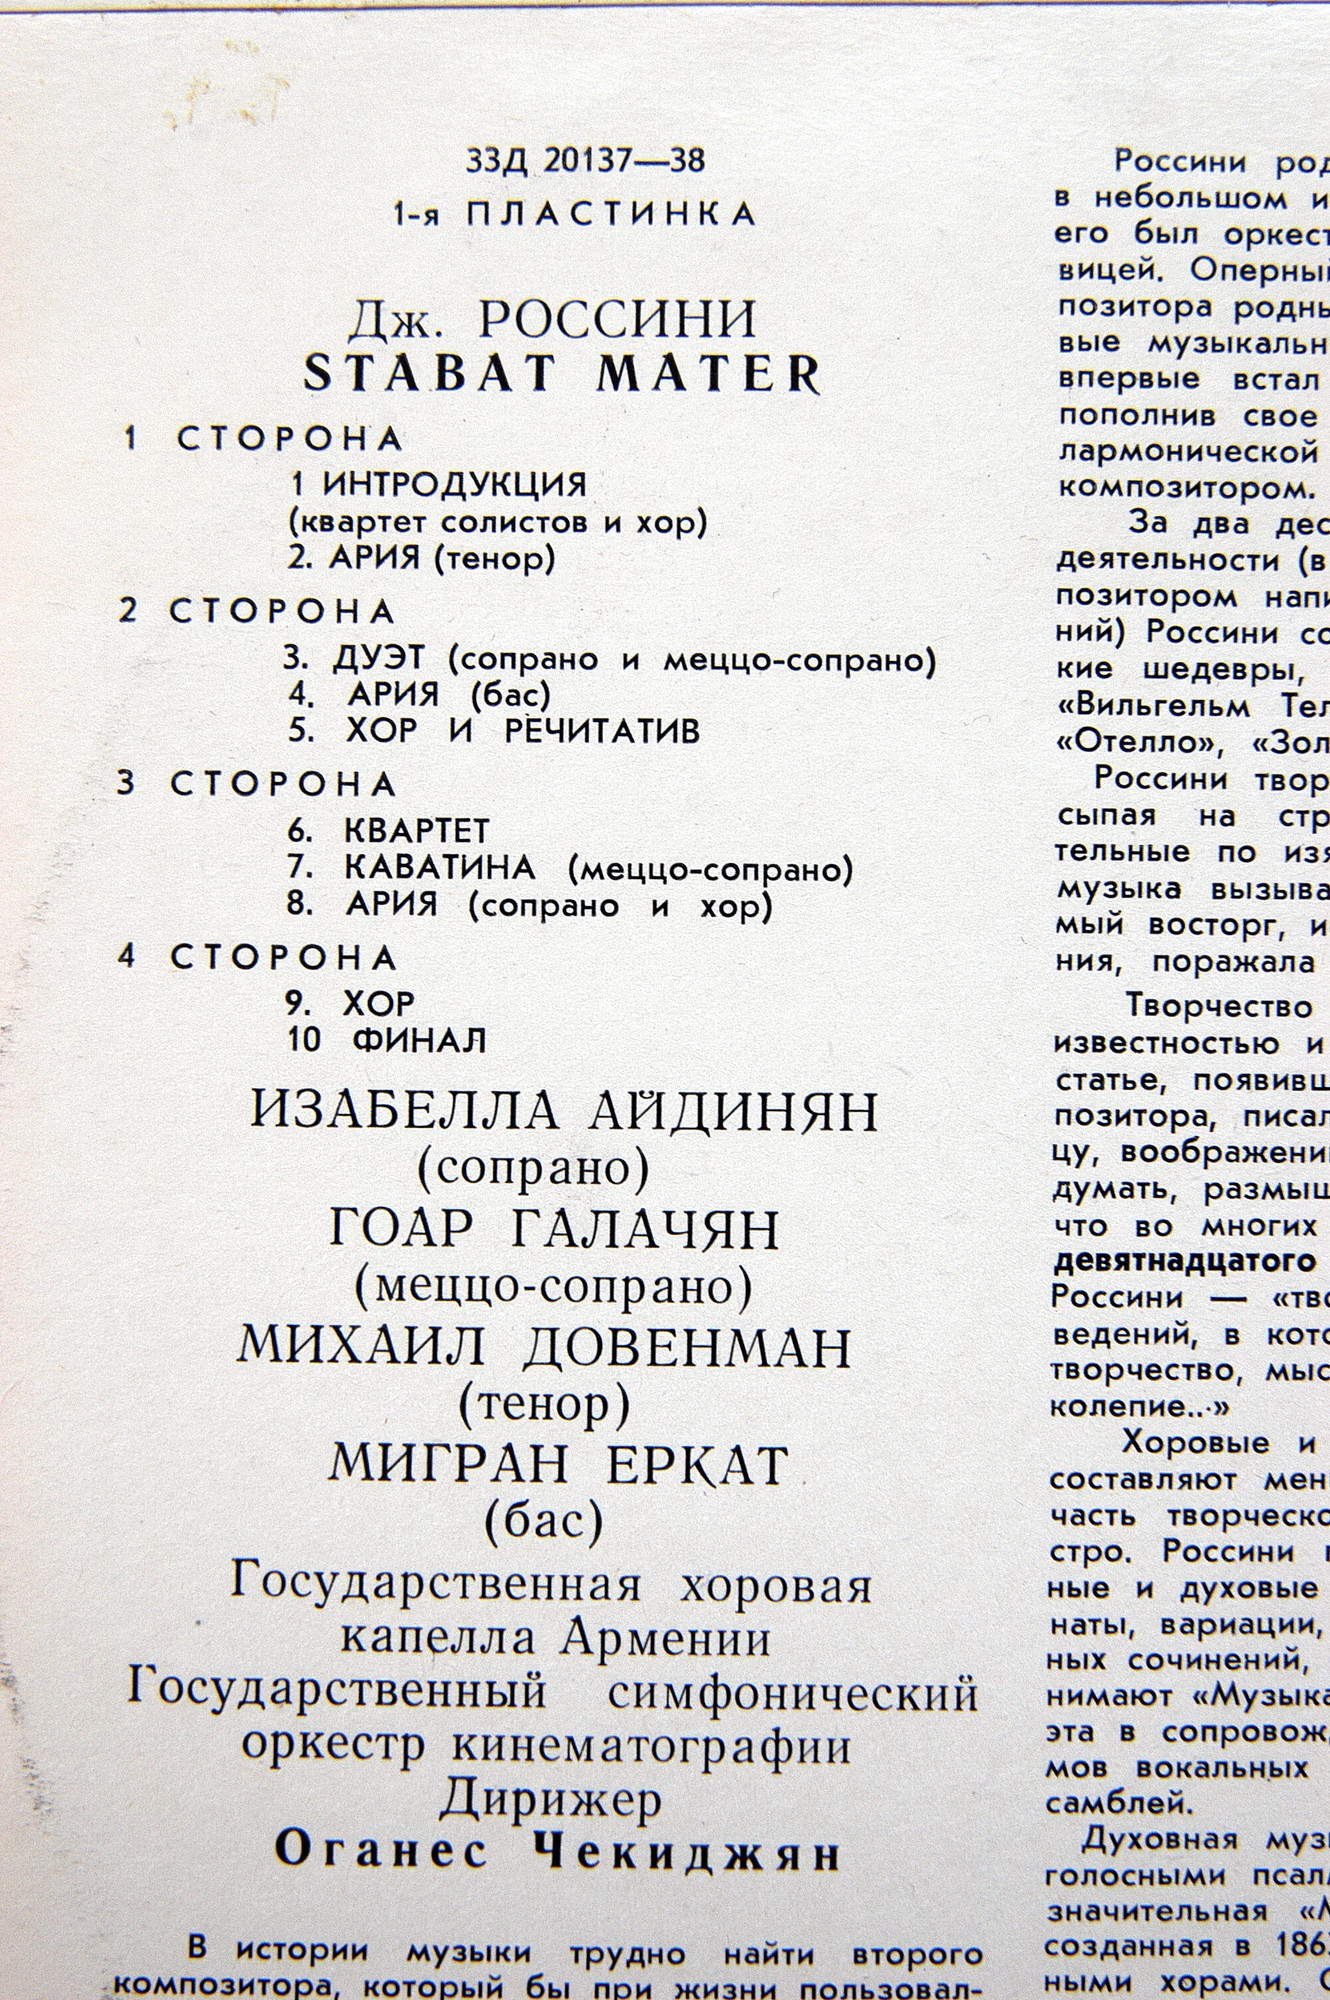 Дж.РОССИНИ (1792–1868): Stabat Mater (О. Чекиджян)